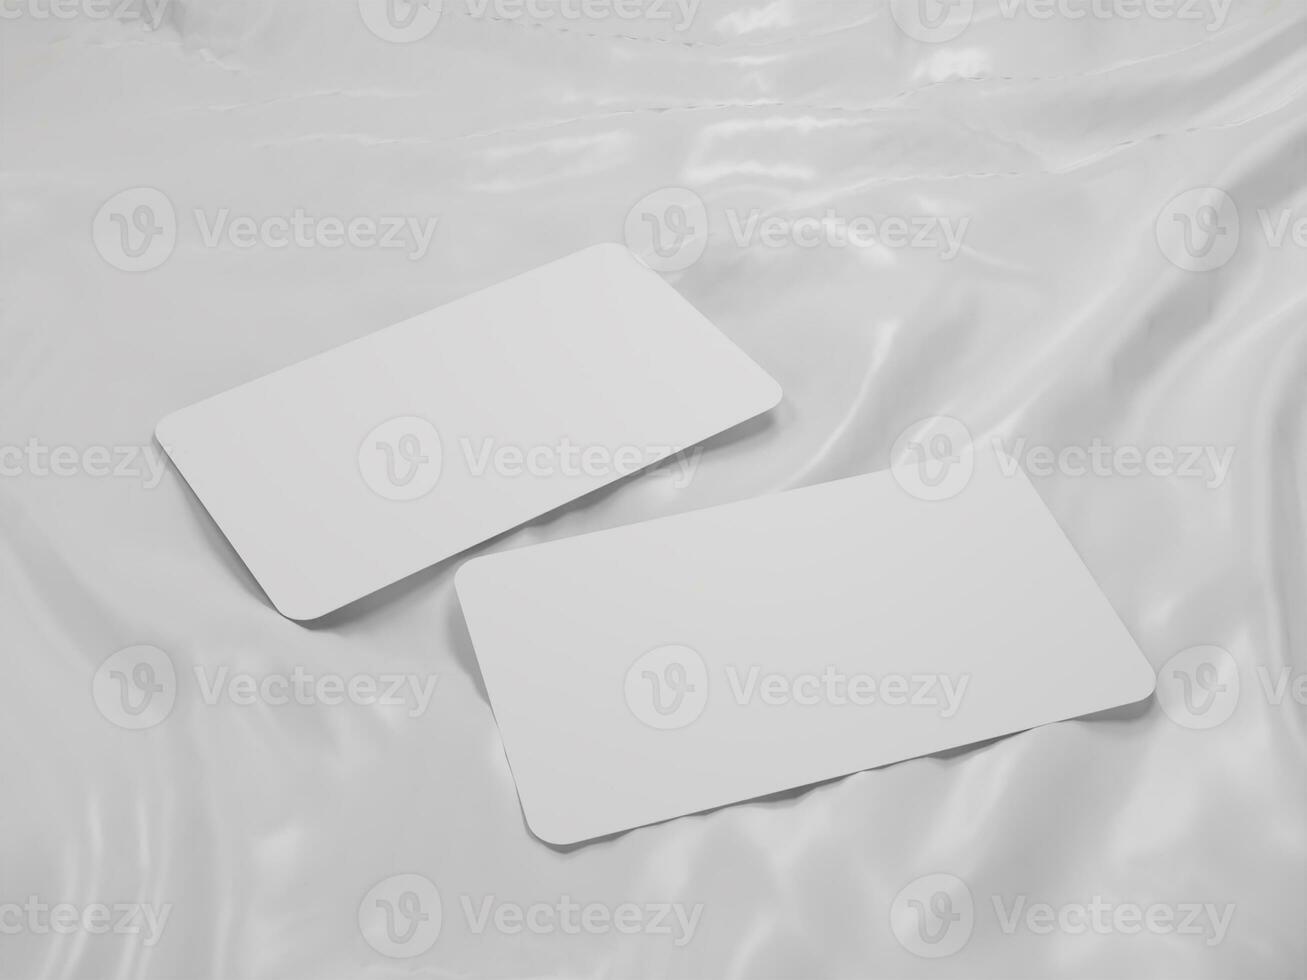 3d rendre vide blanc affaires carte maquette modèle photo dans blanc Contexte côté voir.